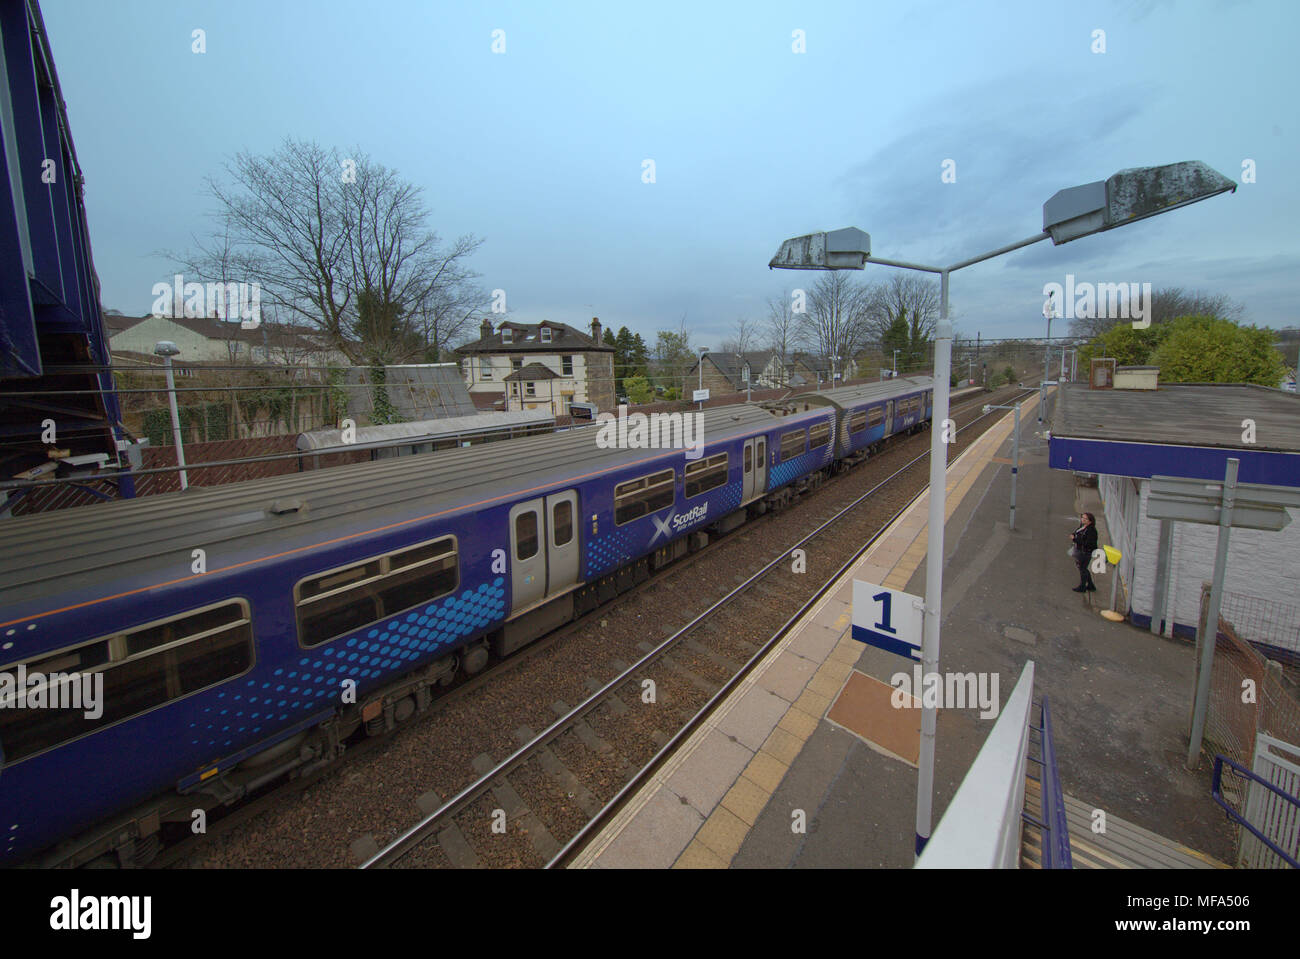 Estación ferroviaria Drunchapel plataforma 1 Ángulo de visión amplio lente 11 irix desde arriba Foto de stock